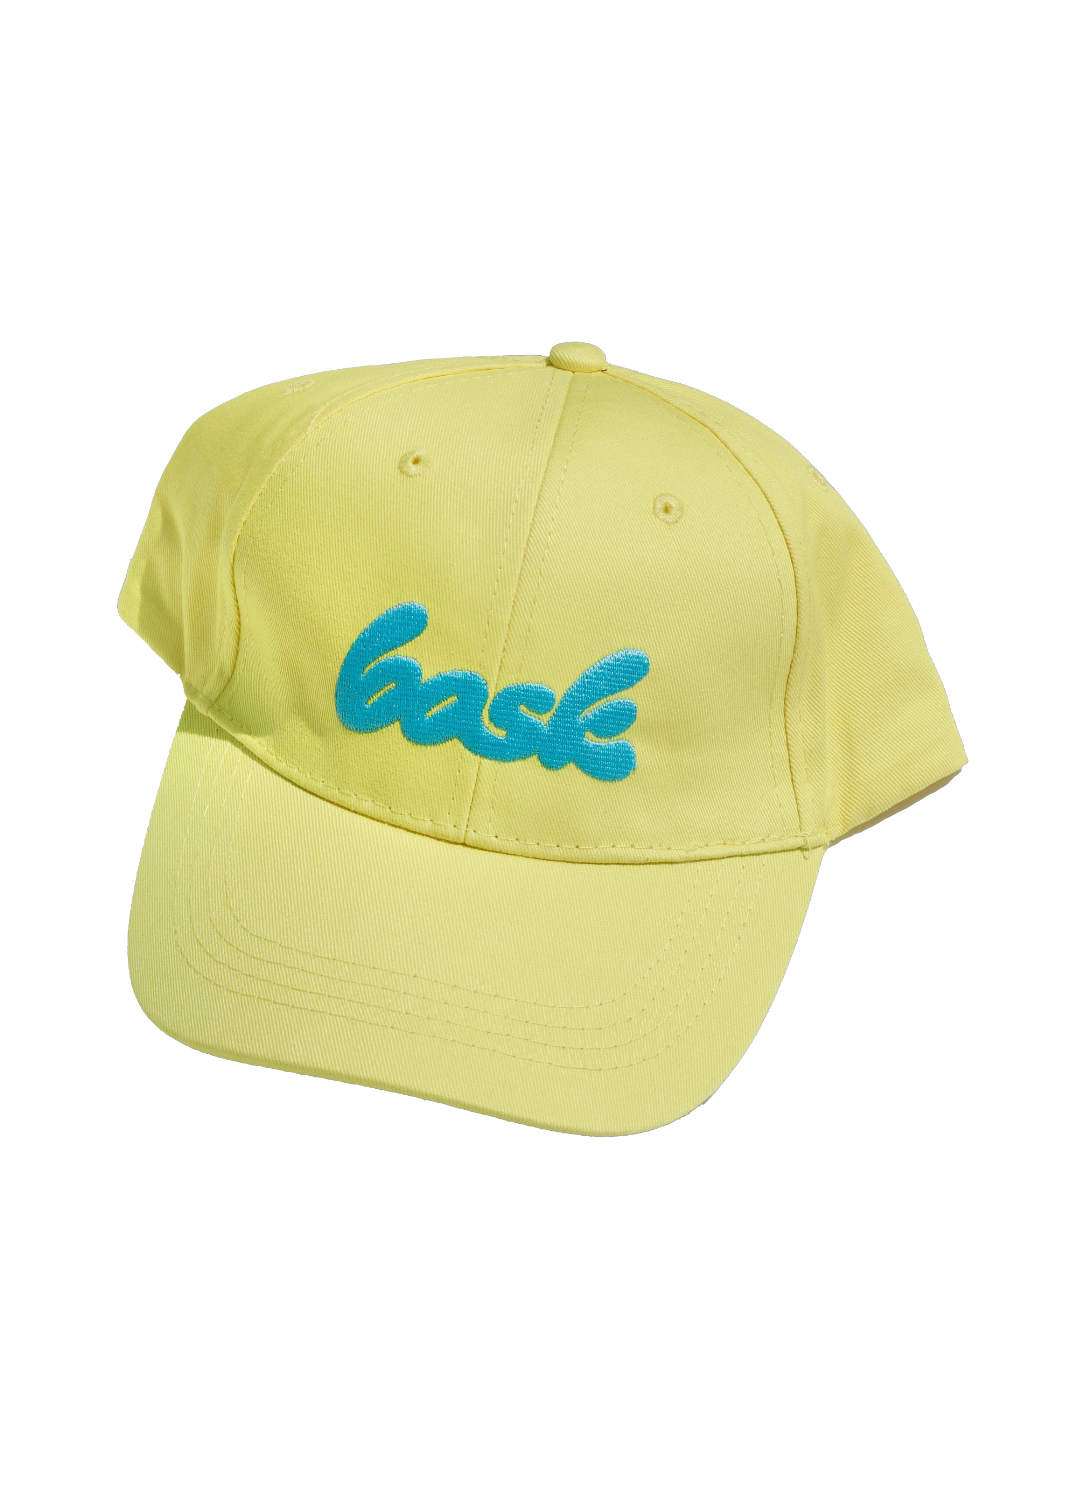 El sombrero de papá bask